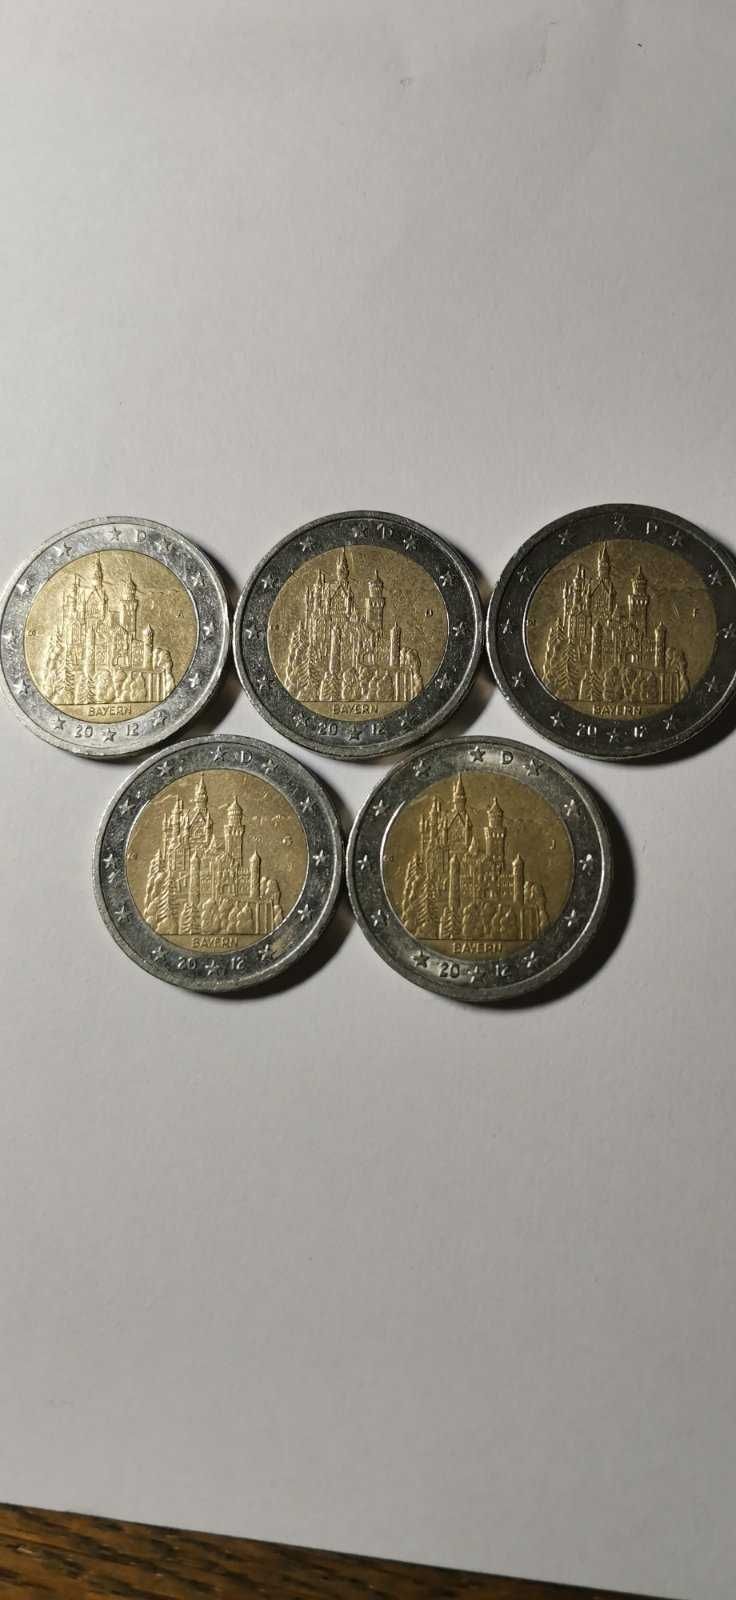 Памятные монеты 2 евро Германия 2012 (ADFGJ) - БАВАРИЯ 5x2